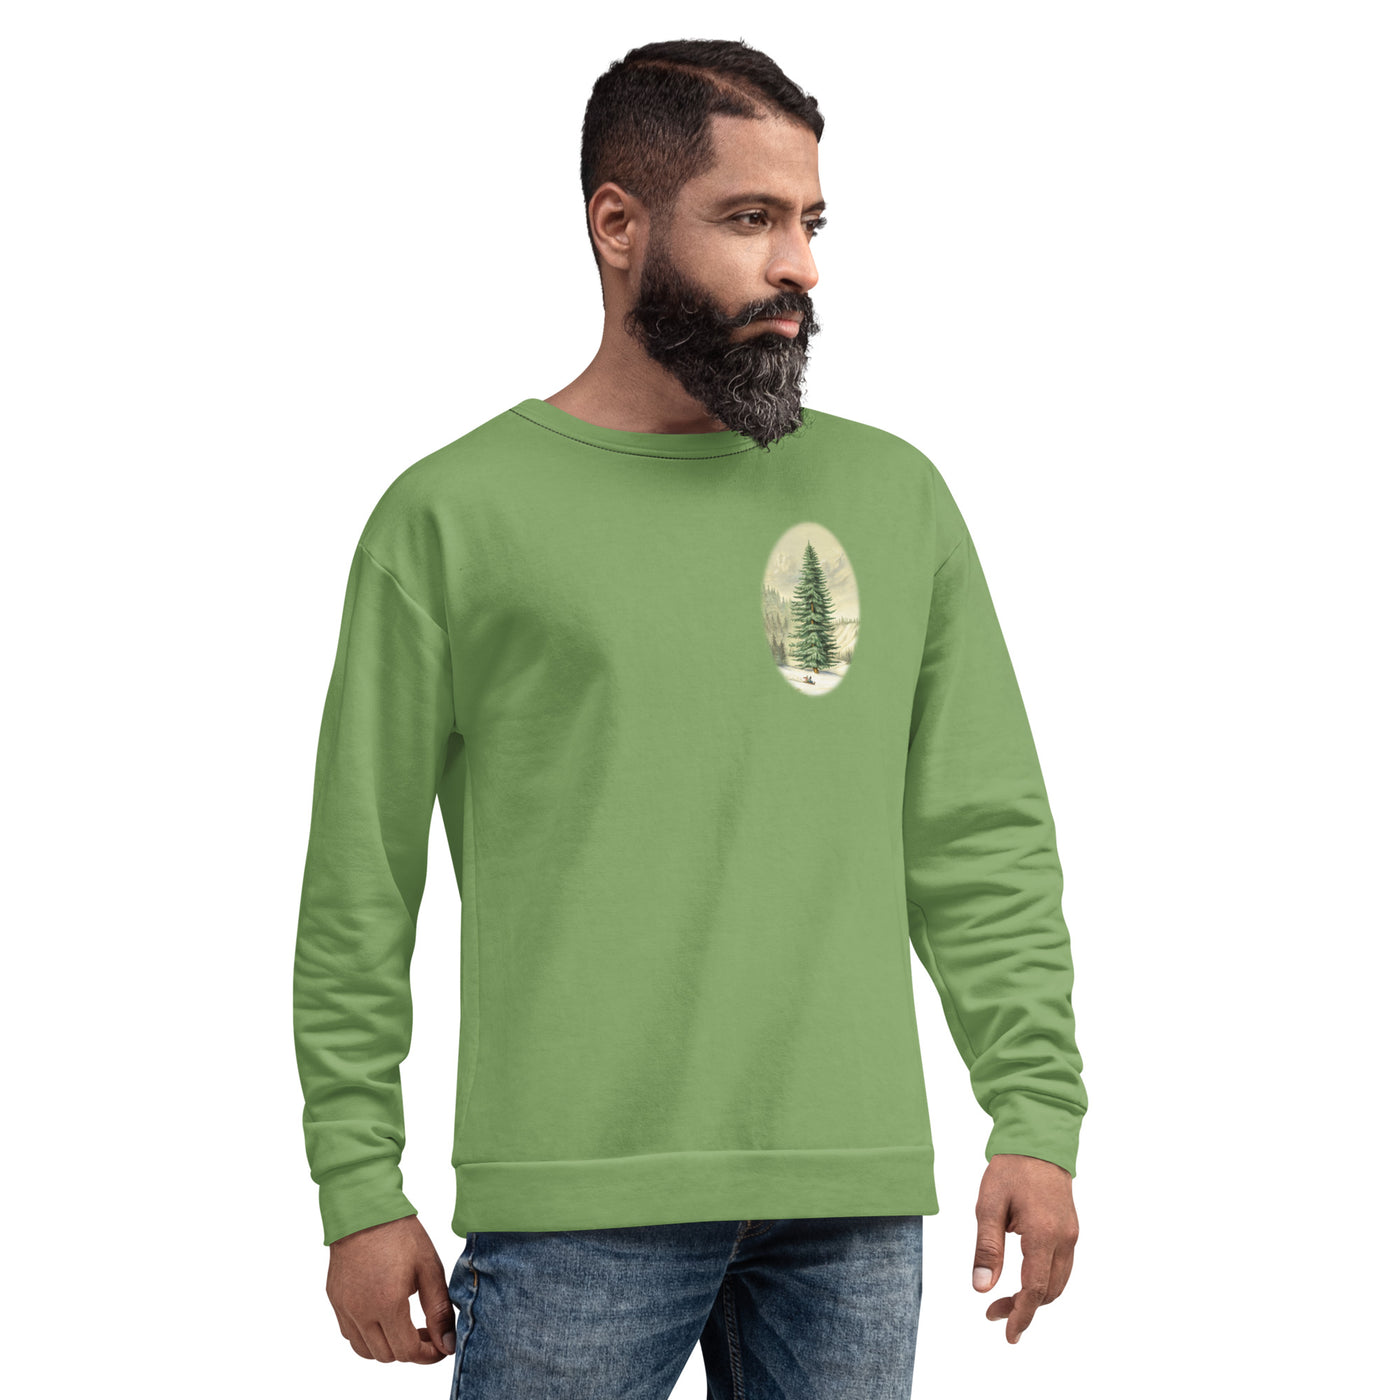 Treemendous Sweatshirt